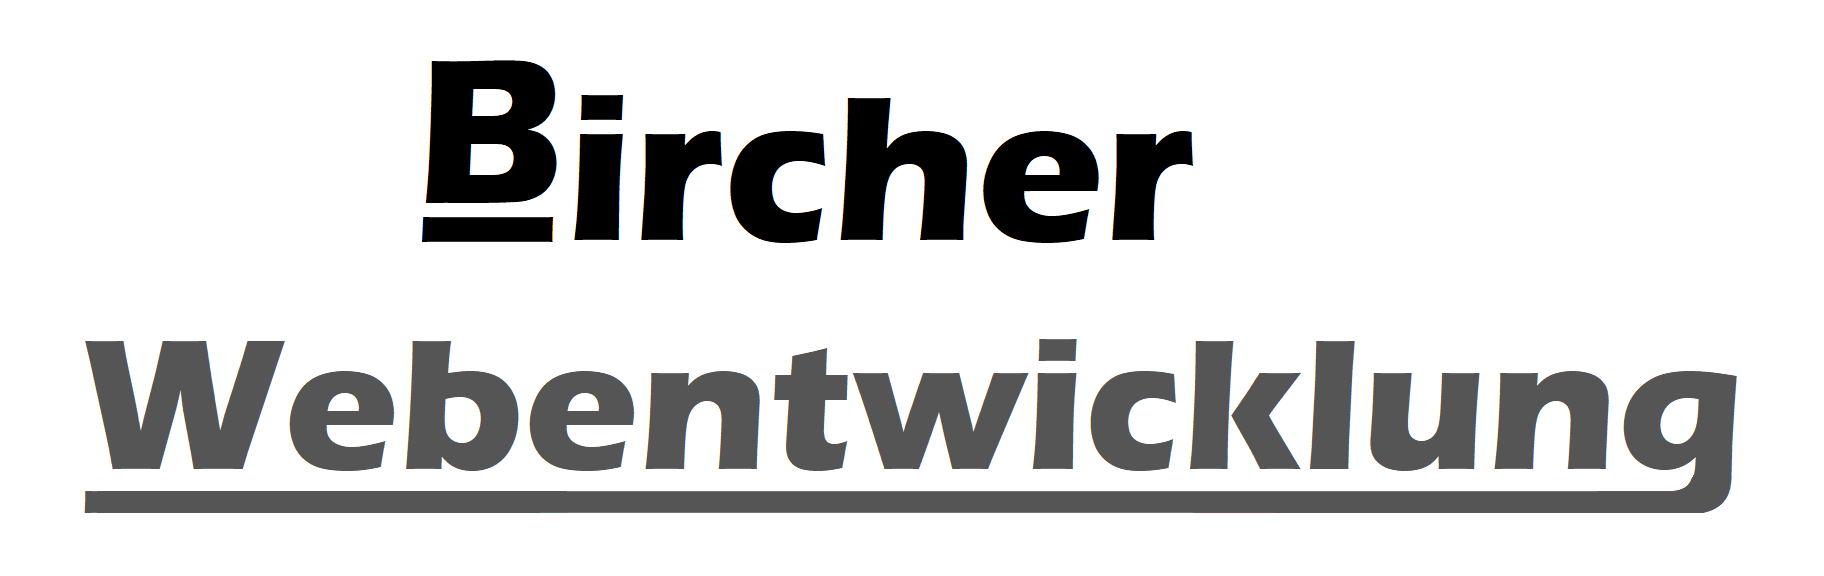 Bircher Webentwicklung, Link Homepage